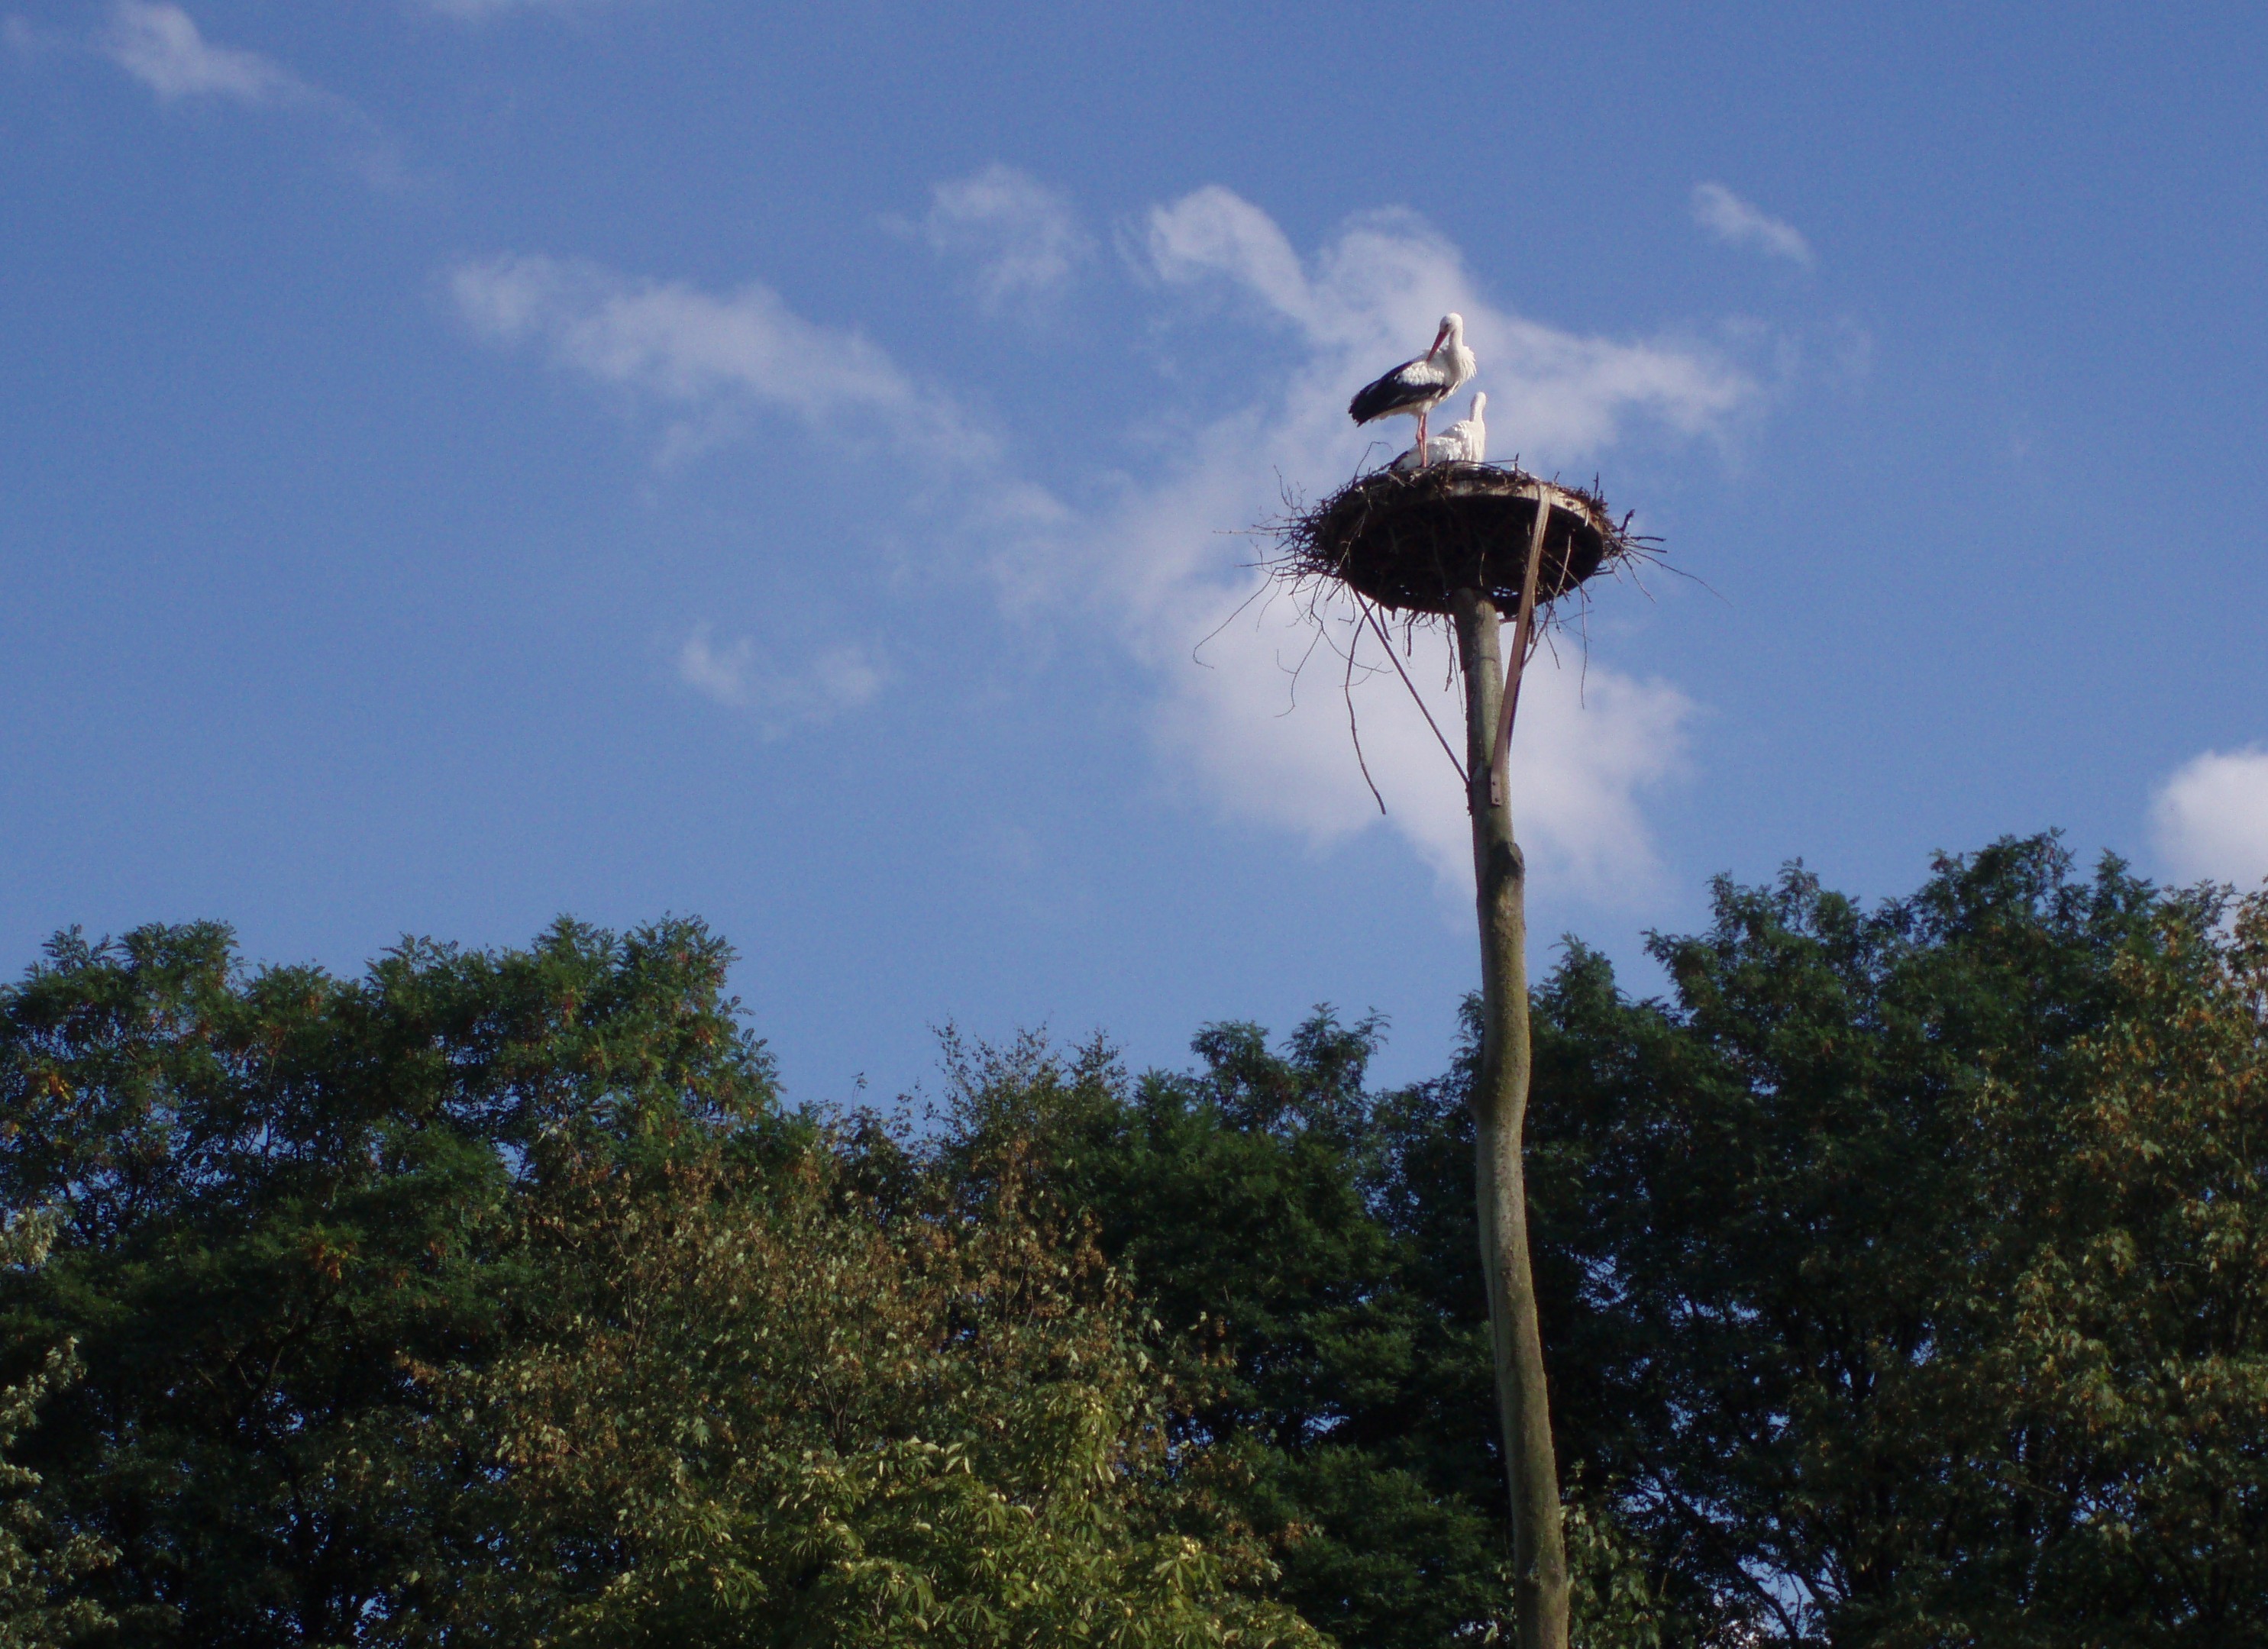 File:Stork-nest-muenster-zoo-germany.jpg - Wikimedia Commons